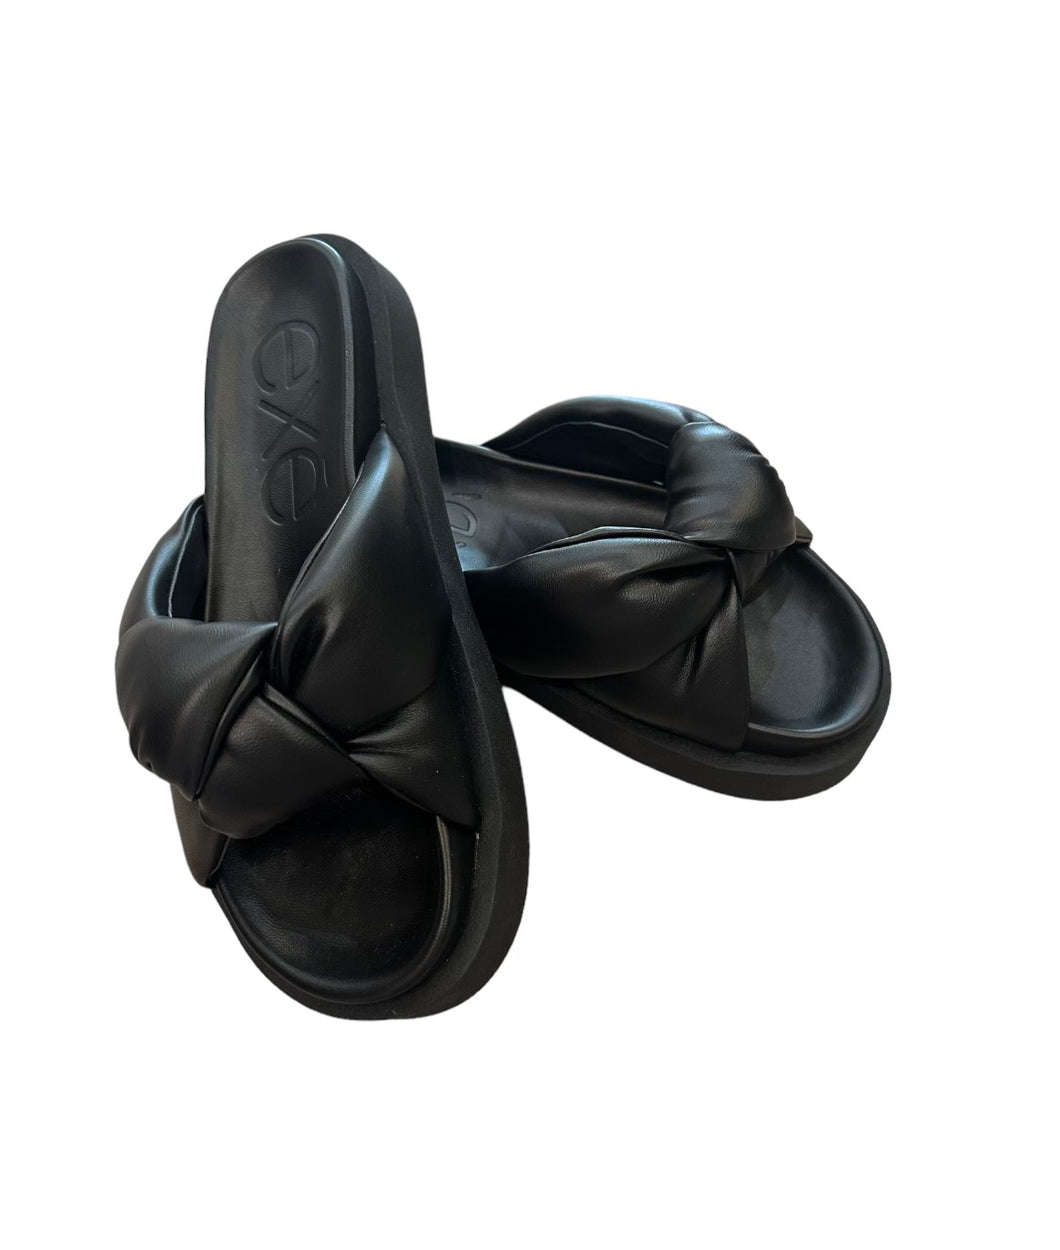 Artemis Knot Sandal in Black